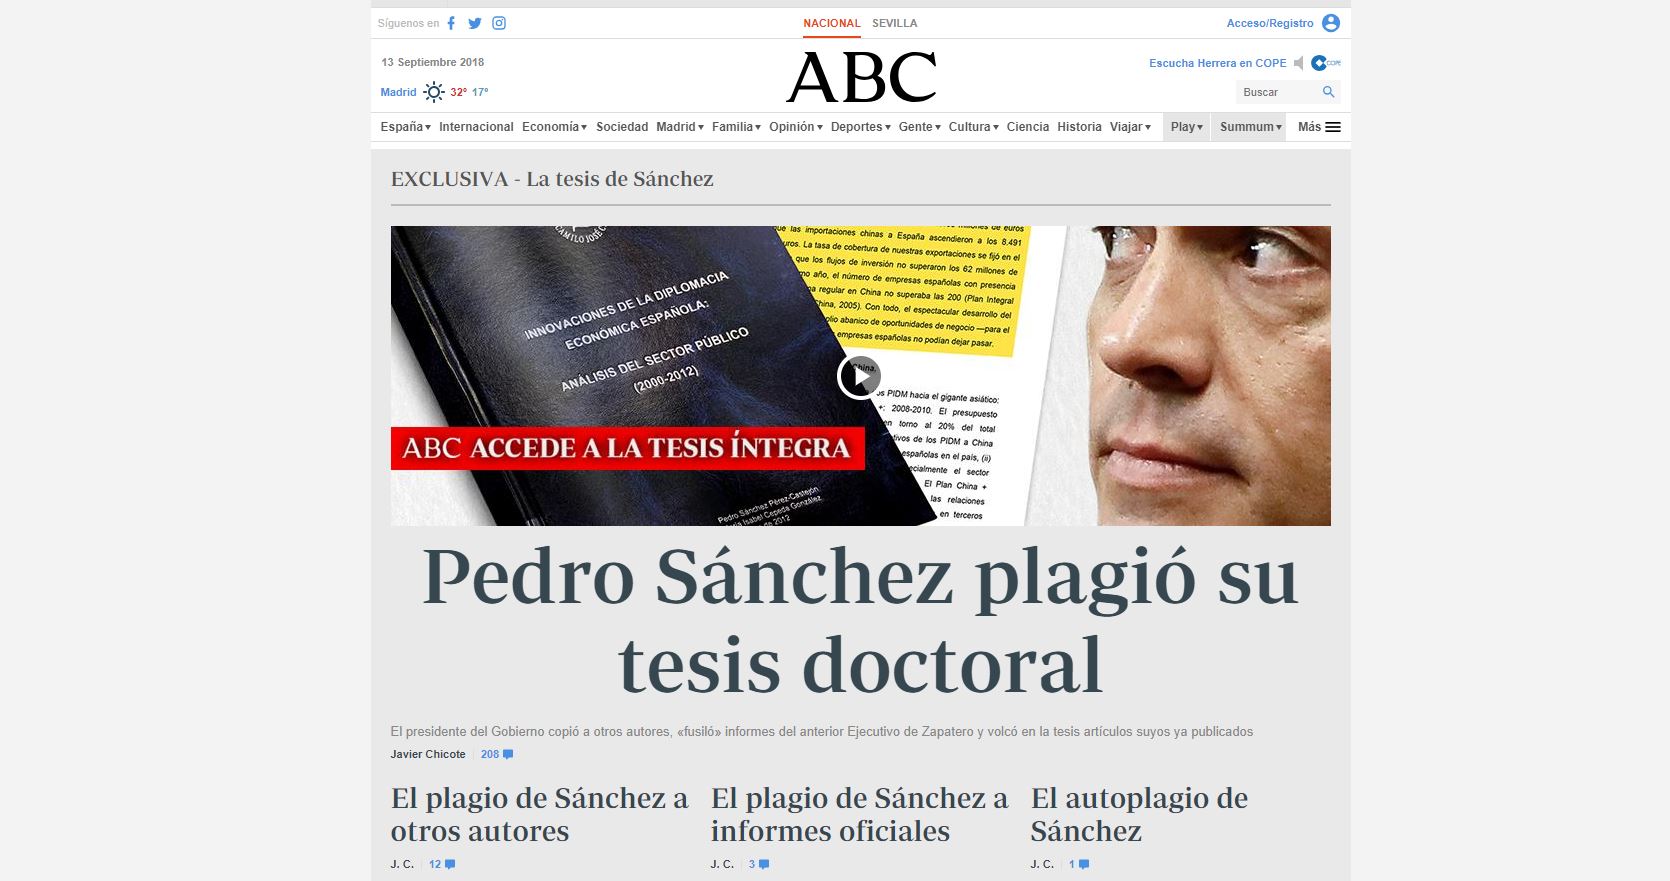 El diario ABC revuelve la política española / Foto: Captura ABC